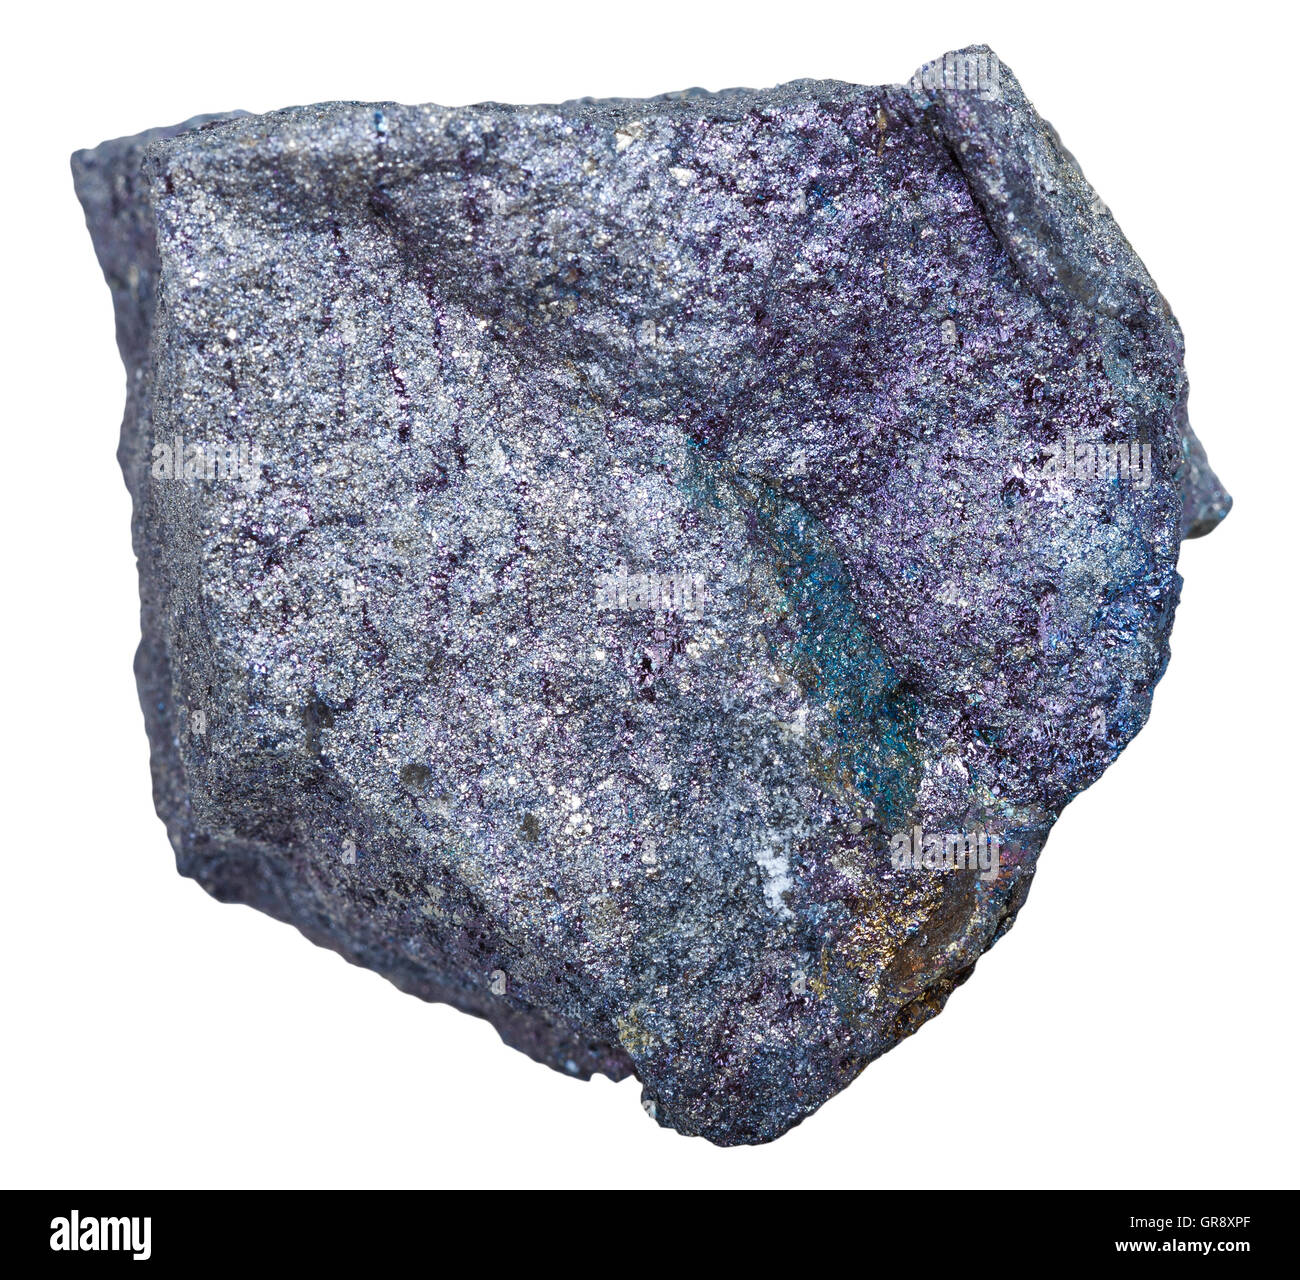 Makroaufnahmen von Bodenschätzen - Bornit (Pfau Erz, Pfau Kupfer) Stein isoliert auf weißem Hintergrund Stockfoto